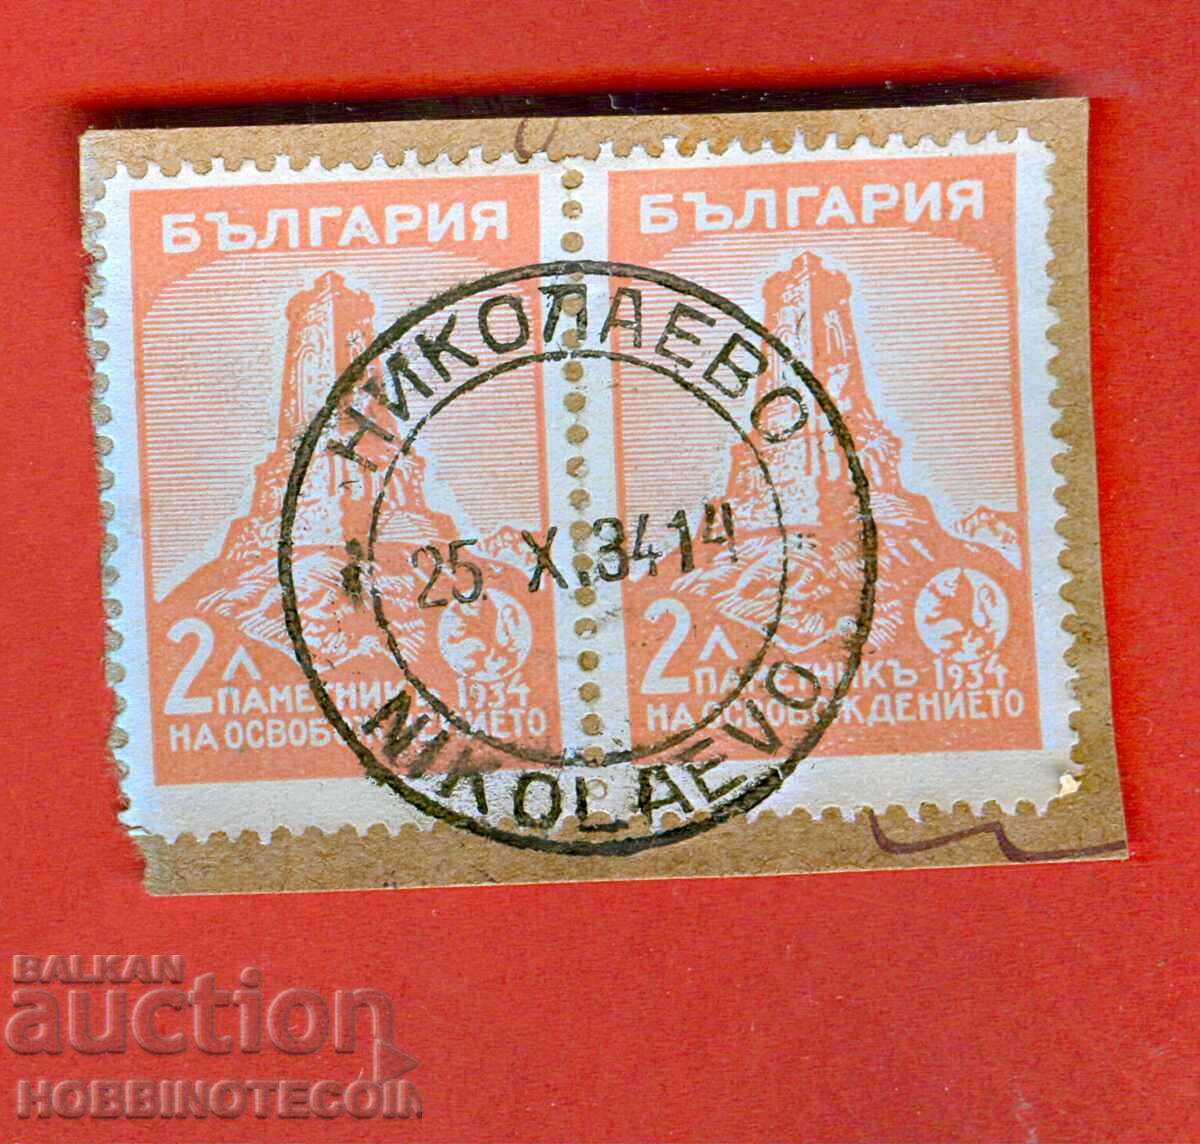 Σφραγίδα ROSE 2 x 2 Lv NIKOLAEVO - 25 X 1934 - 3